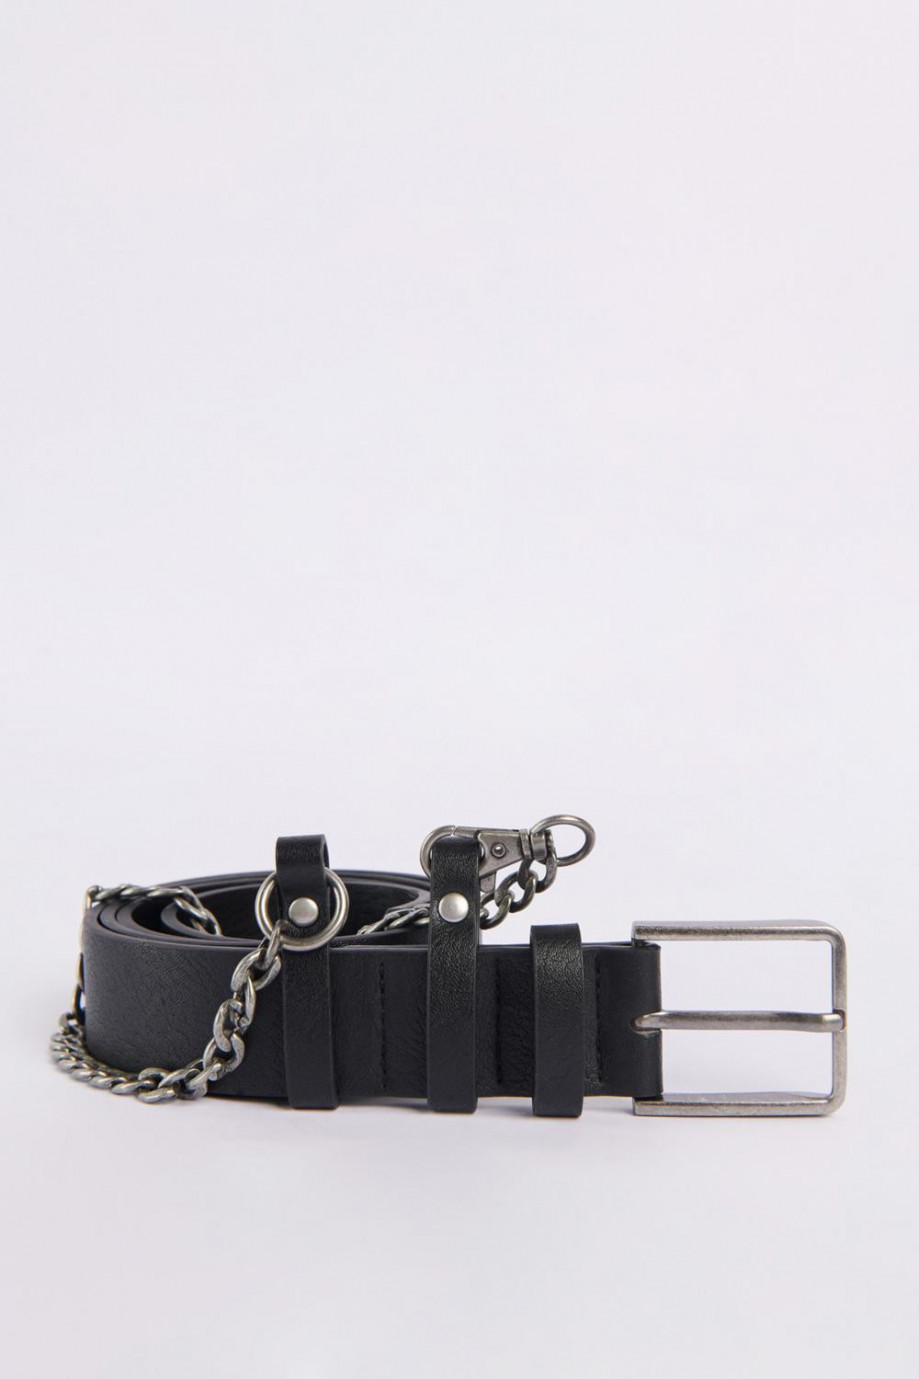 Cinturón sintético negro con cadena y hebilla metálica